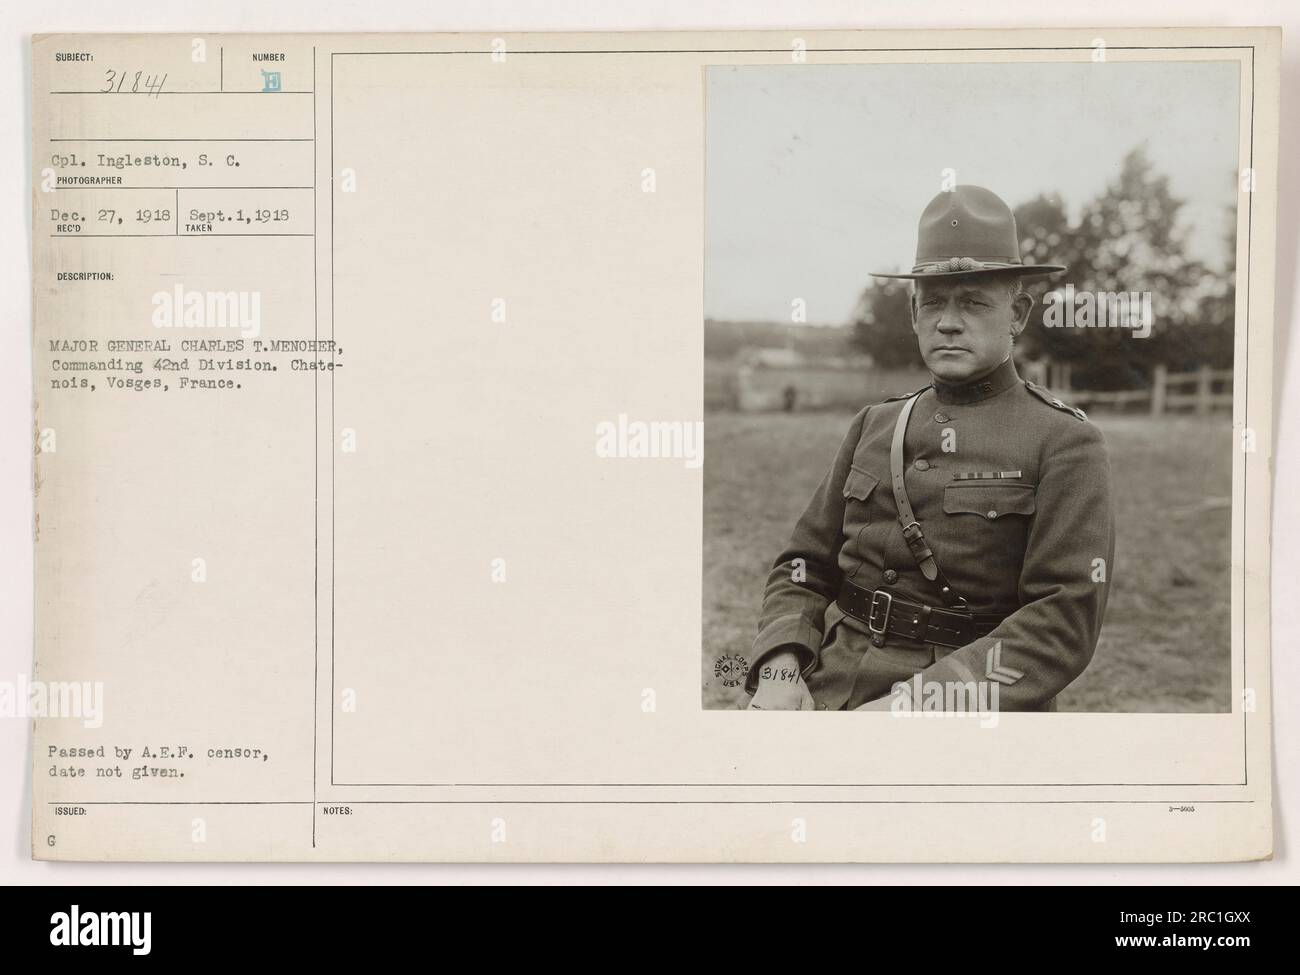 'CPL. Ingleston, S.C. cattura un'immagine del maggiore generale Charles T. Menoher, comandante della 42a Divisione, a Chate-nois, Vosges, Francia il 1 settembre 1918. Questa fotografia, numerata 31841, è stata ricevuta e scattata il 27 dicembre 1918. È stato approvato dalla censura A.E.P. ma la data esatta non è indicata." Foto Stock